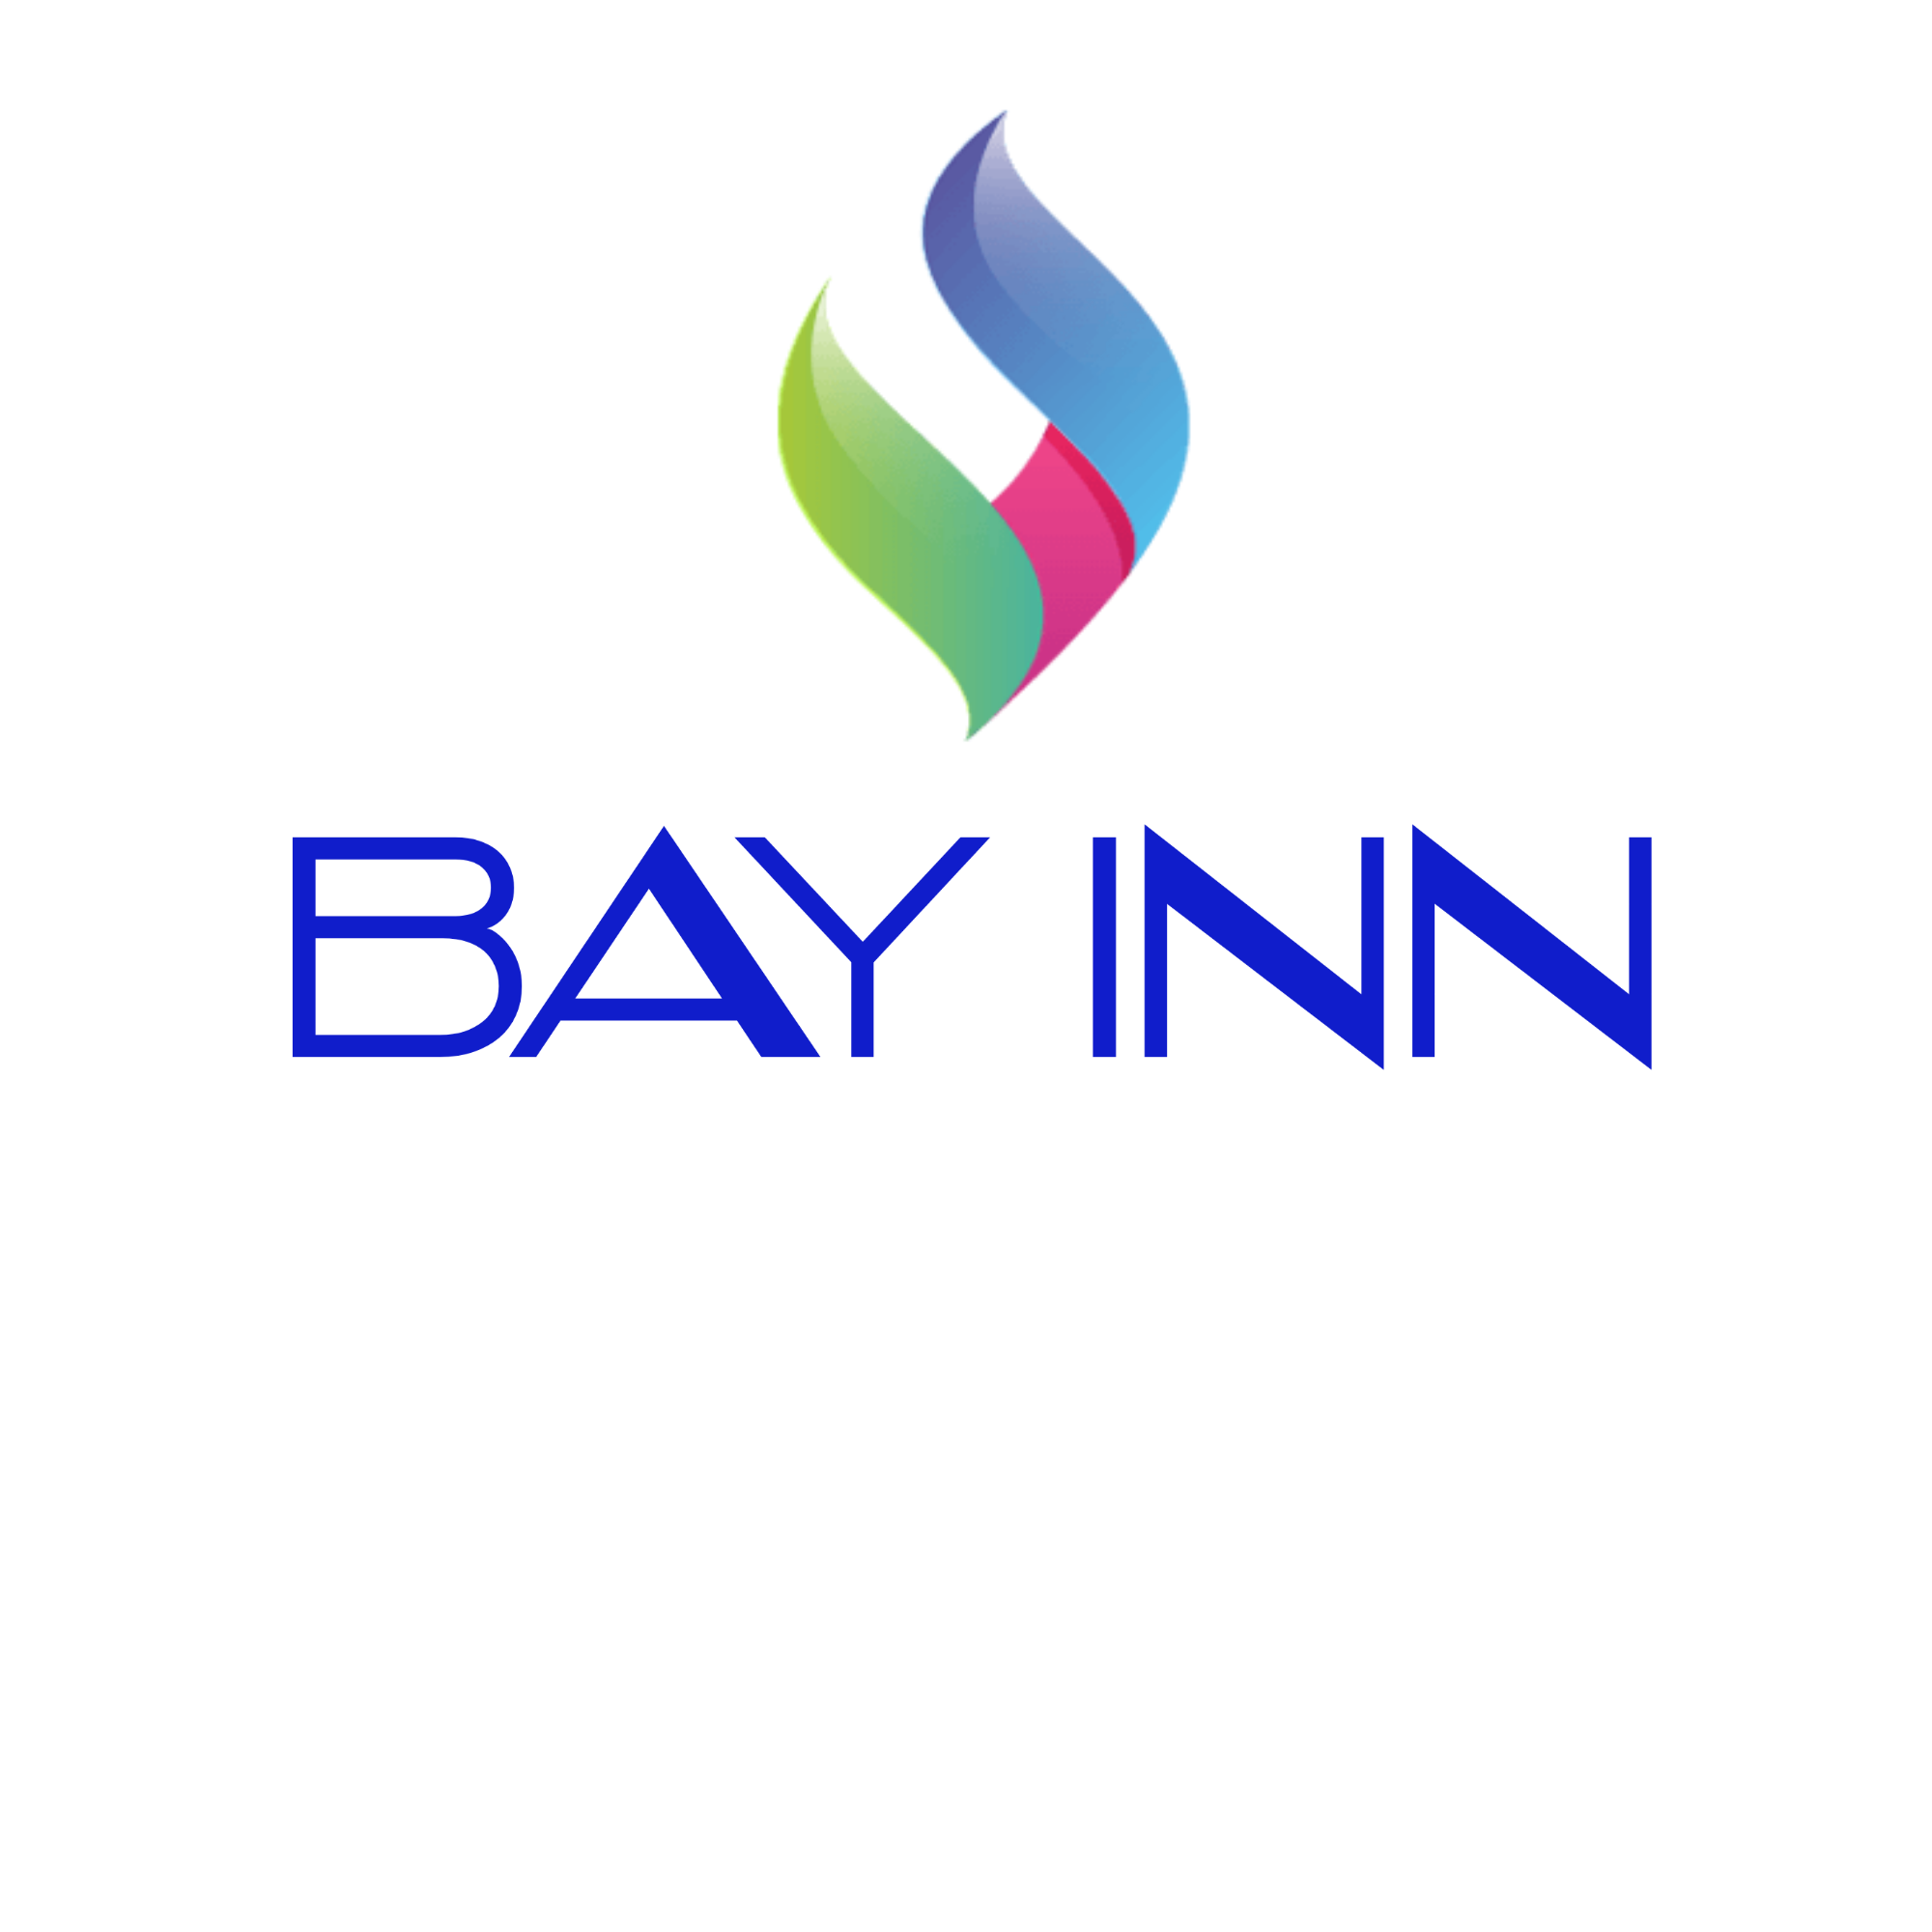 BAYINN logo